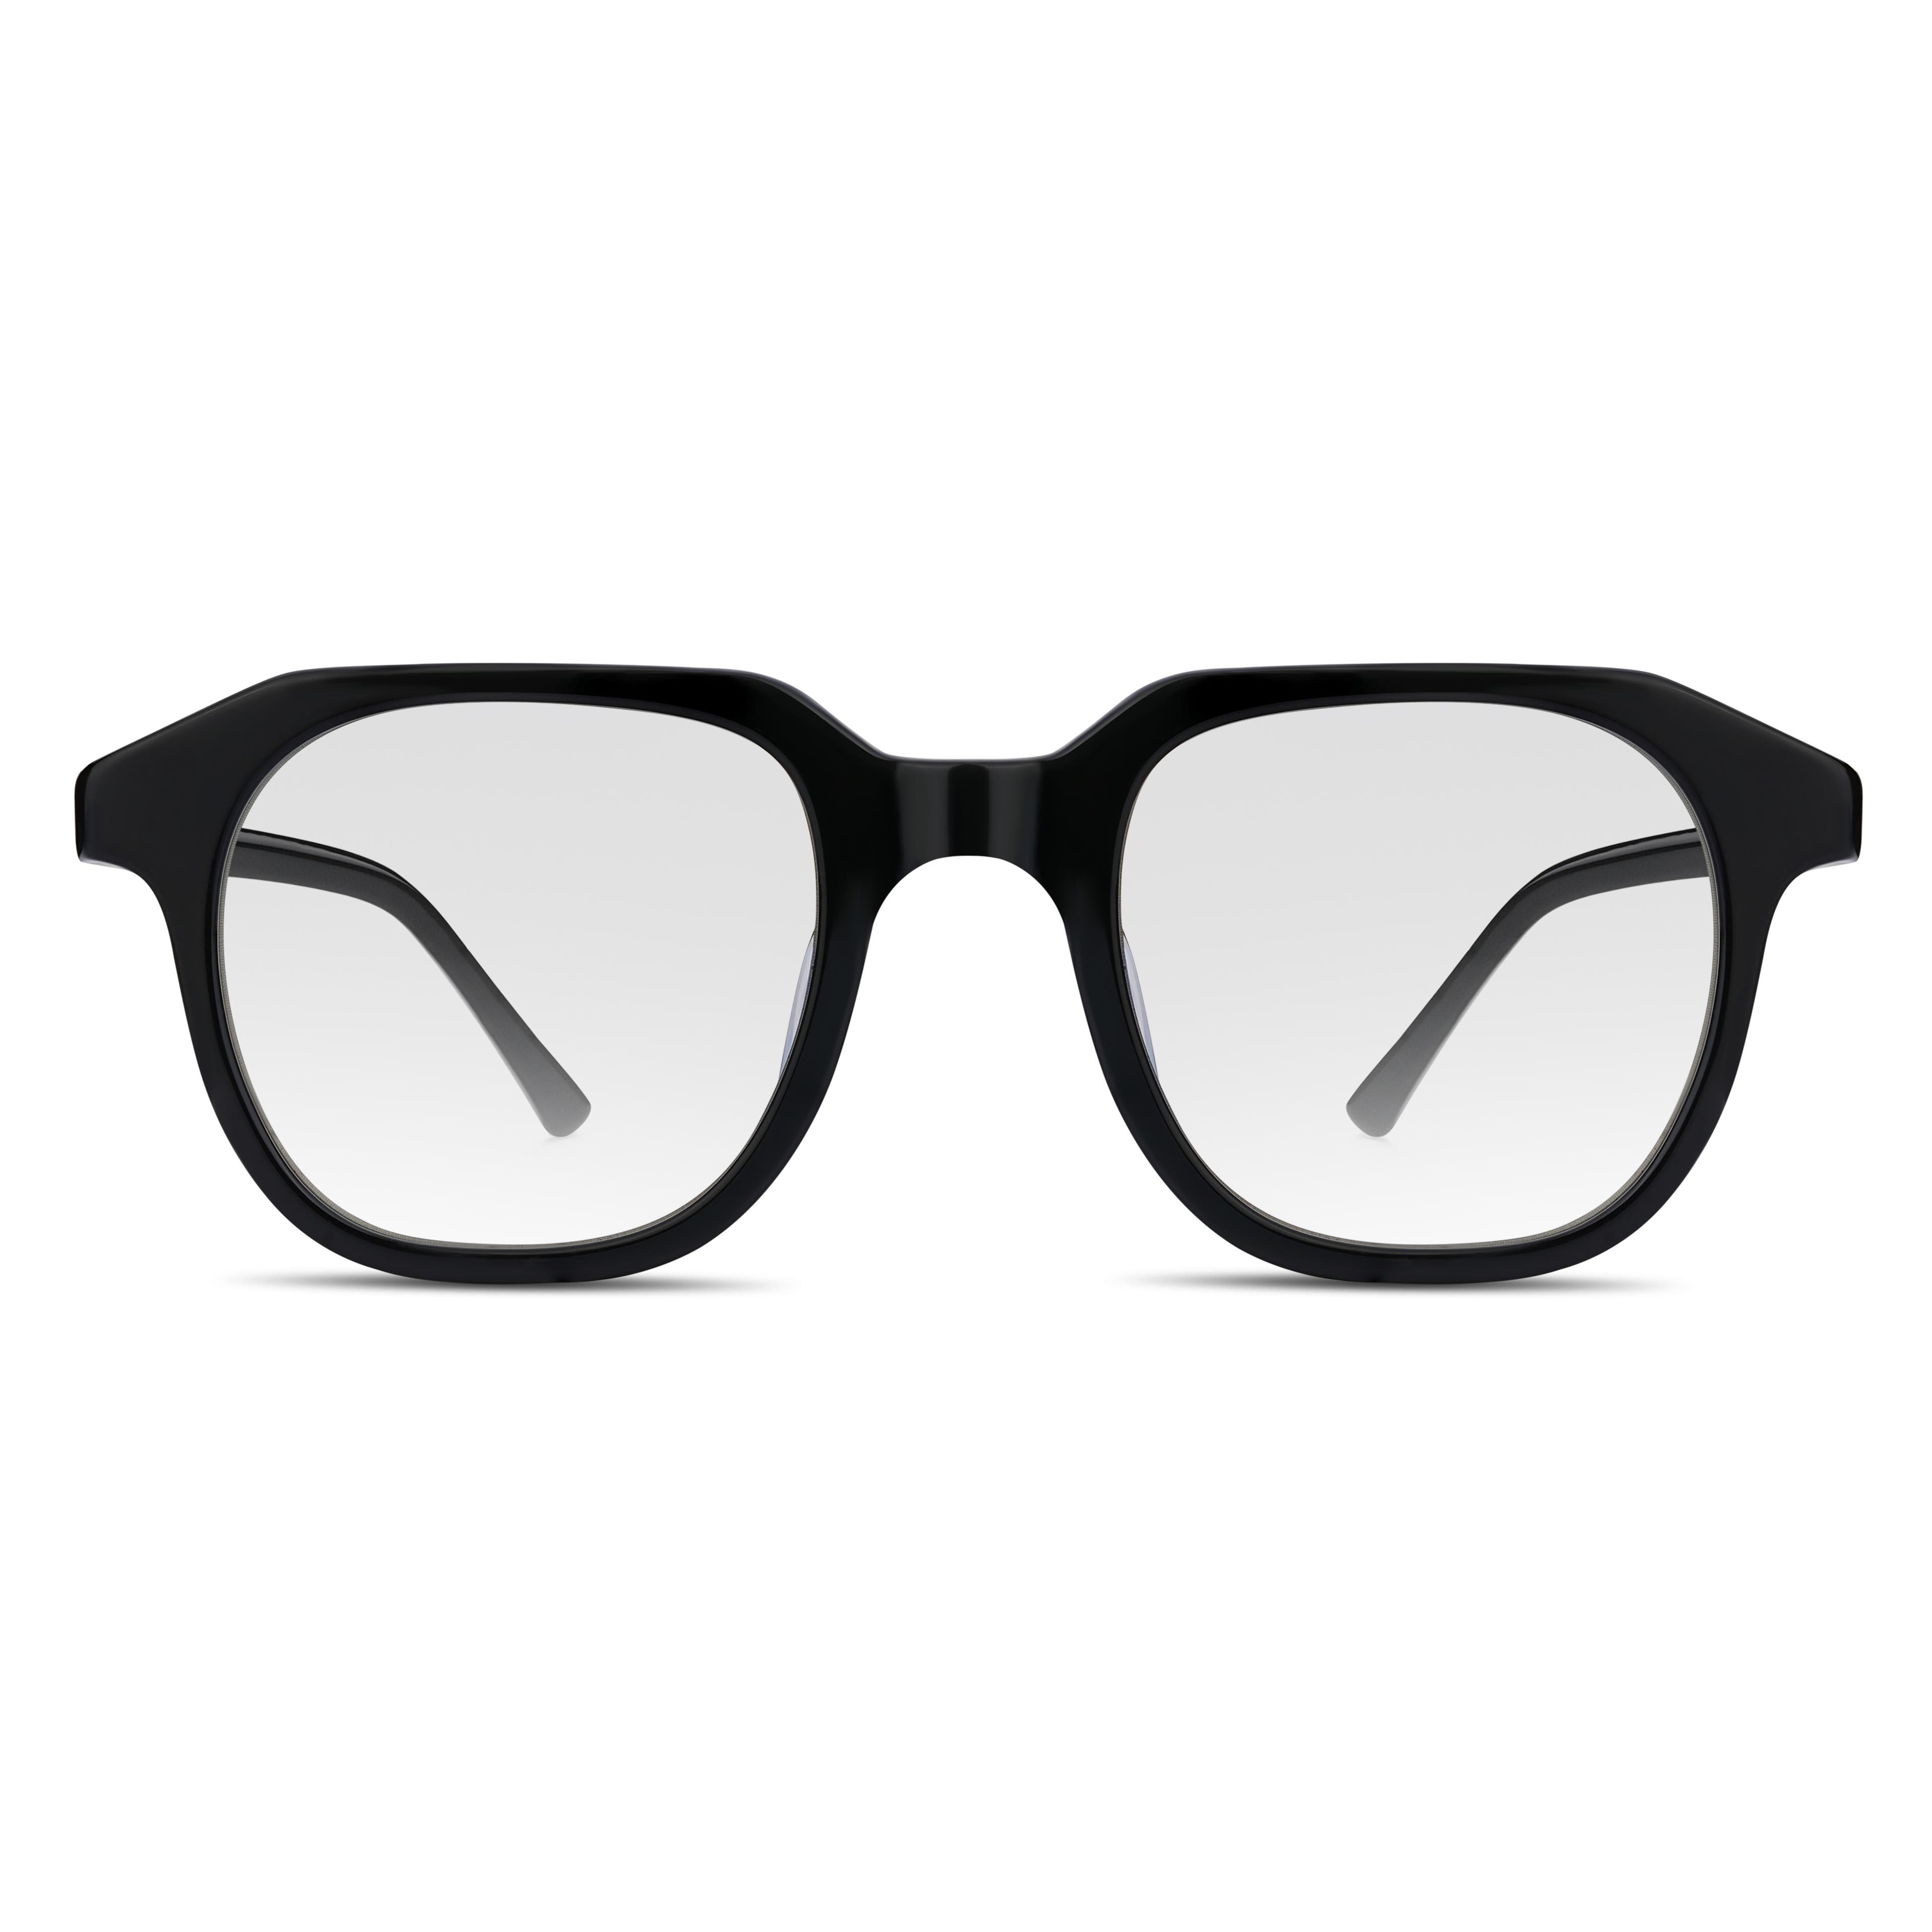 Czarne geometryczne okulary typu hot rimmed z blokadą światła niebieskiego